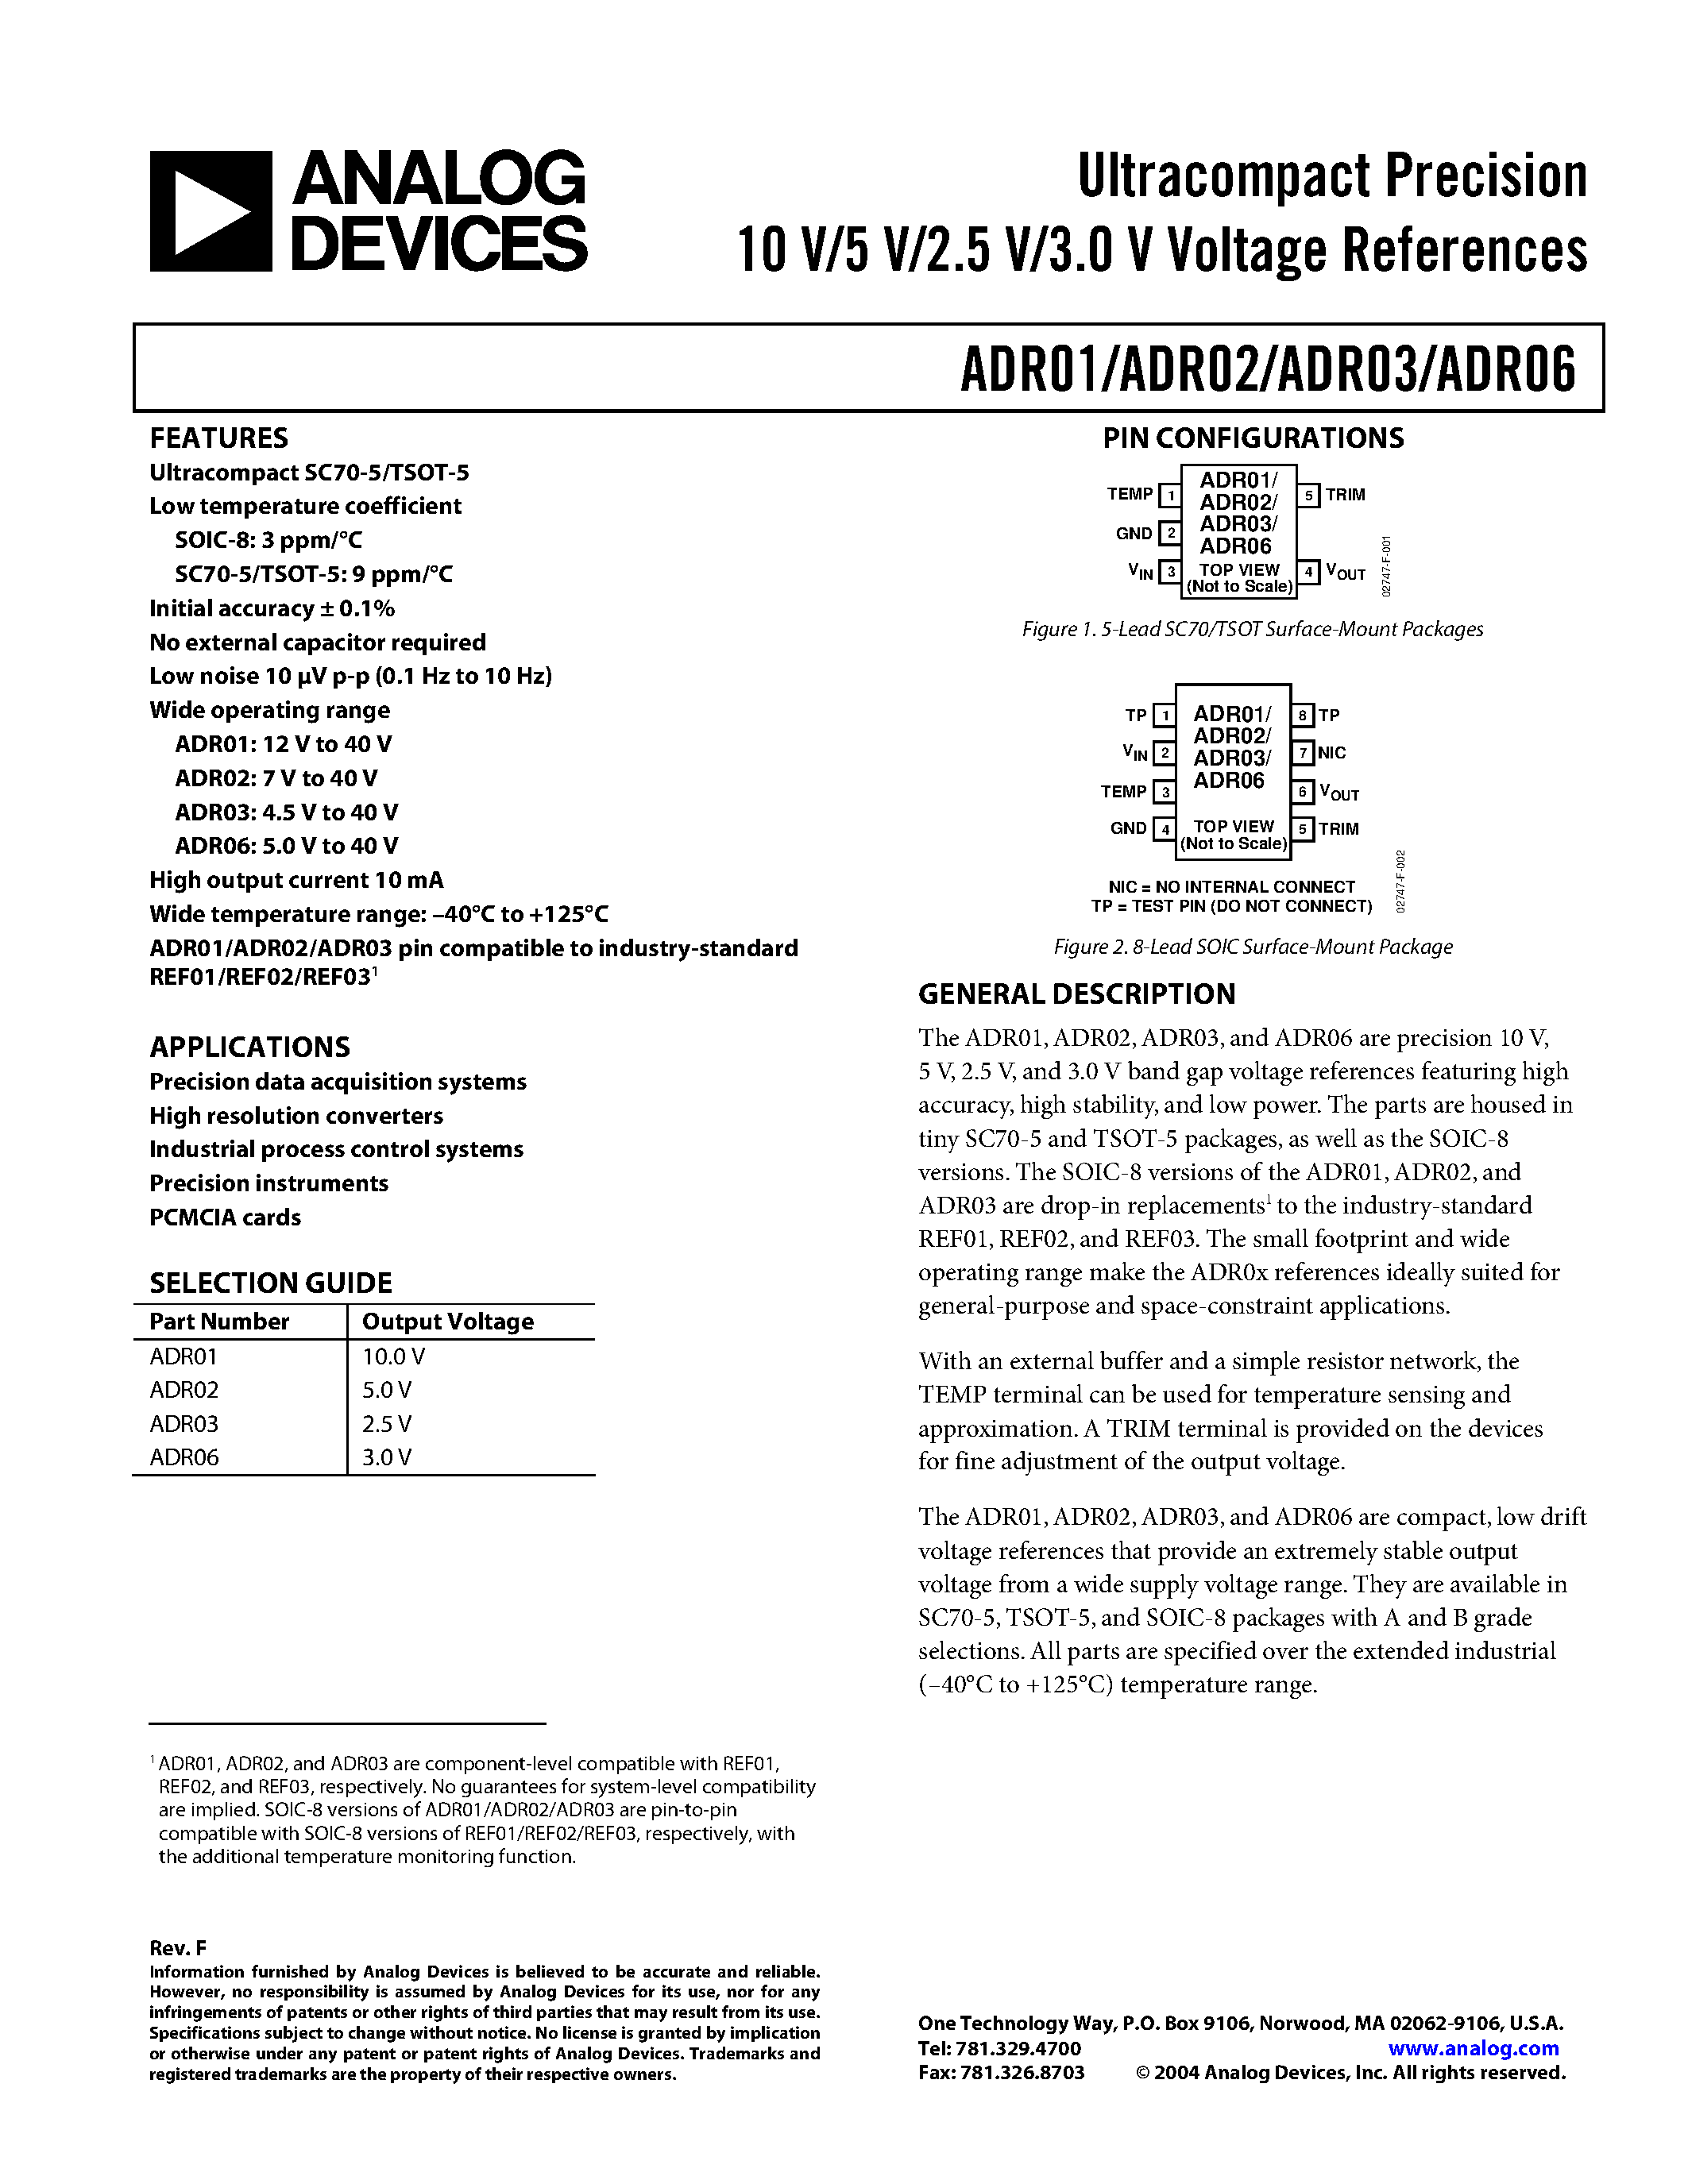 Даташит ADR02BR - Ultracompact Precision10 V/5 V/2.5 V/3.0 V Voltage References страница 1